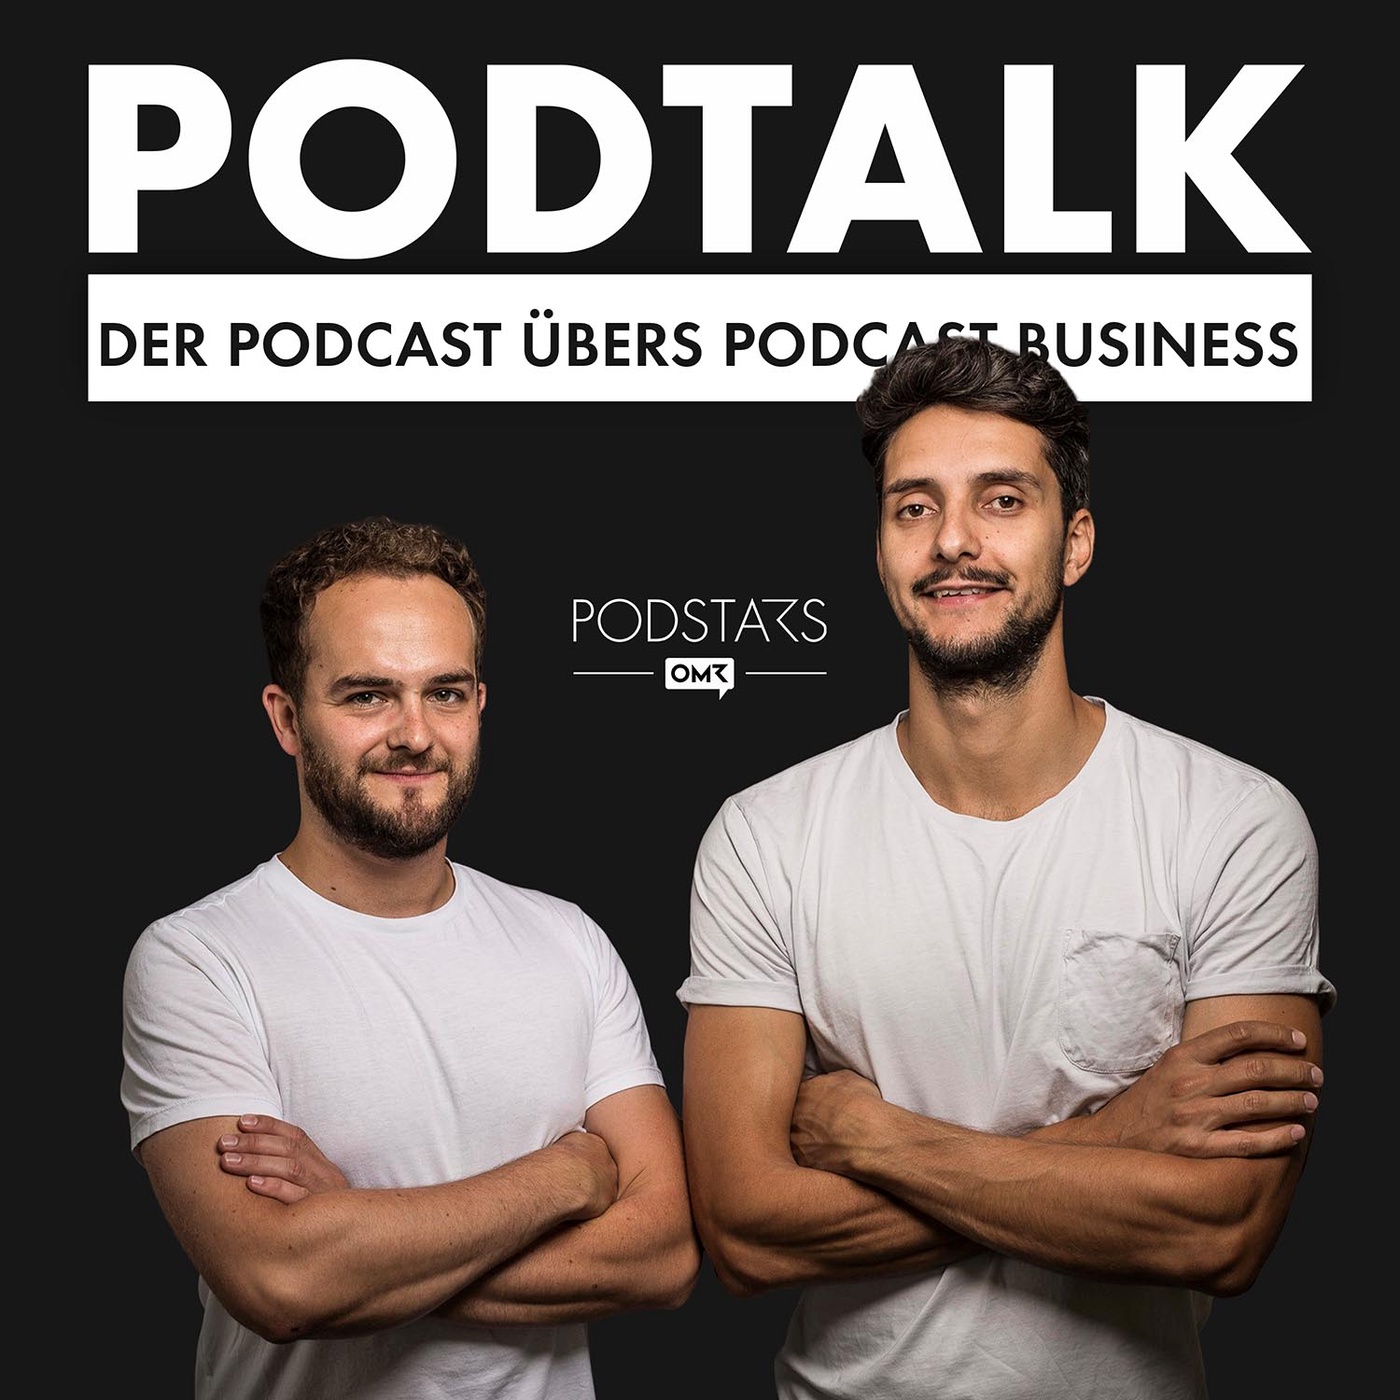 PodTalk #48: Podcasts und Musik – ein Perfect Match? mit André Hofer von Universal Music